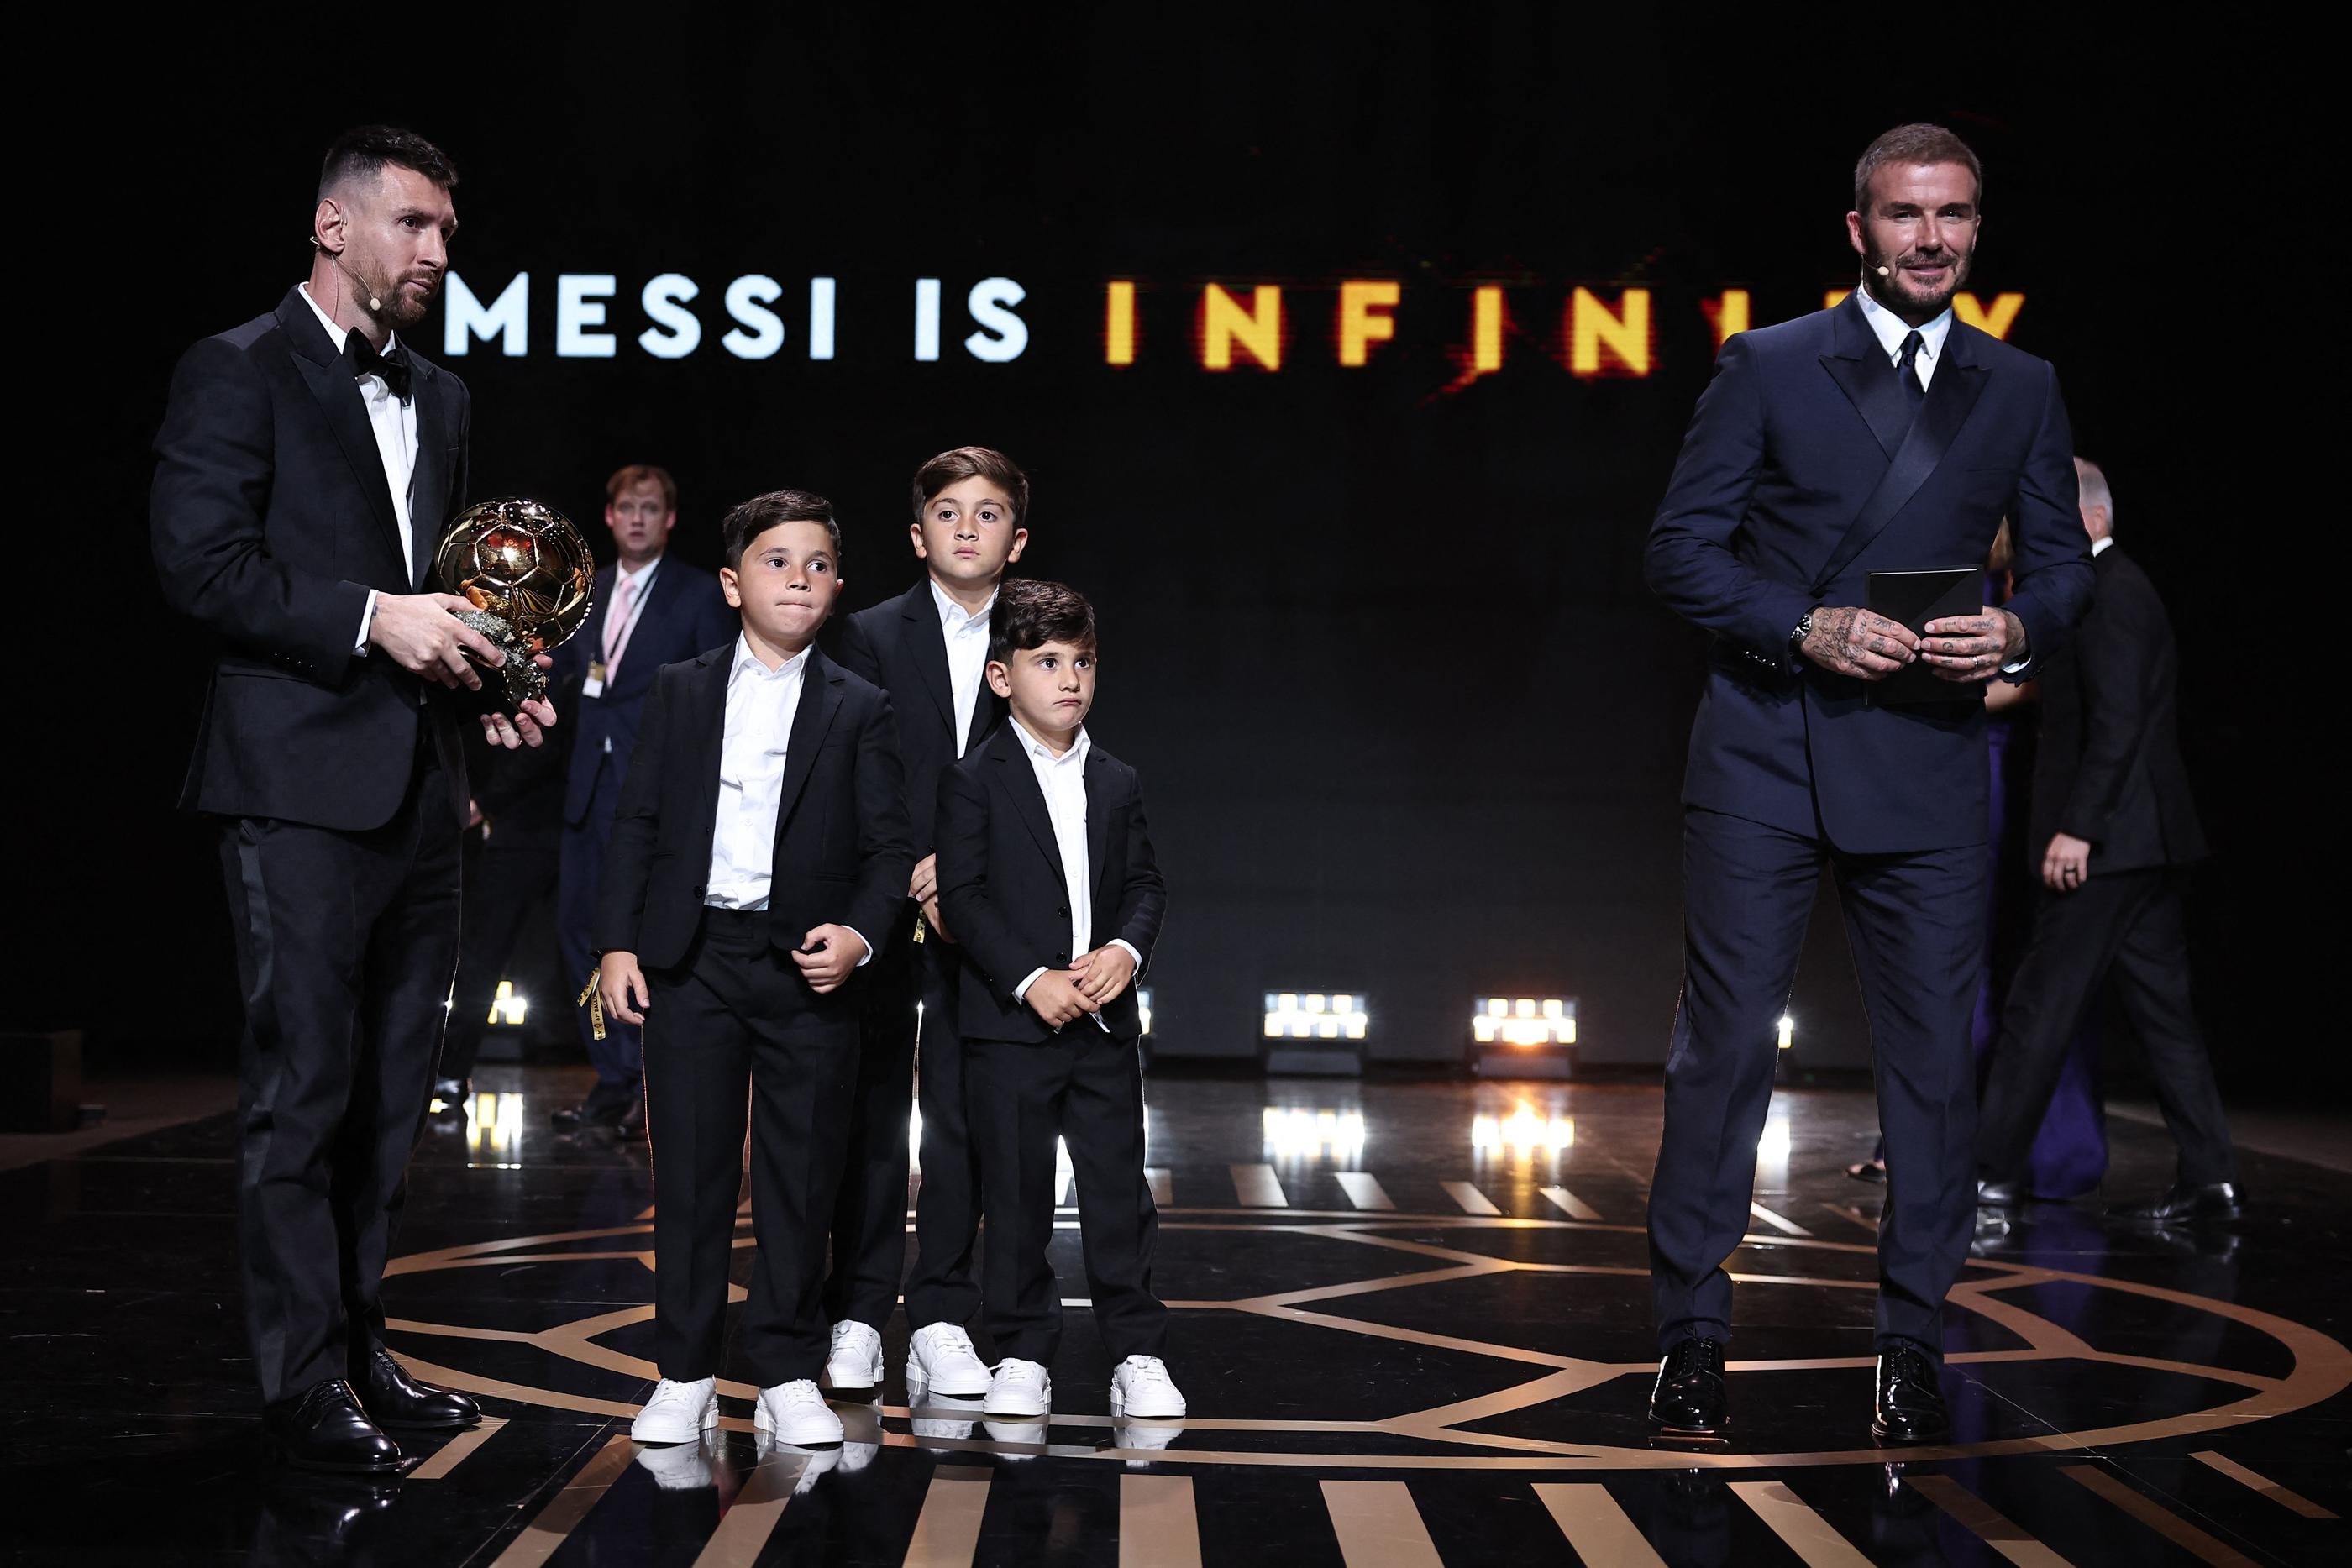 Des mains de David Beckham, président et copropriétaire de l'Inter Miami, Lionel Messi a reçu ce lundi 30 octobre son huitième Ballon d'Or France Football. (Photo by FRANCK FIFE / AFP)